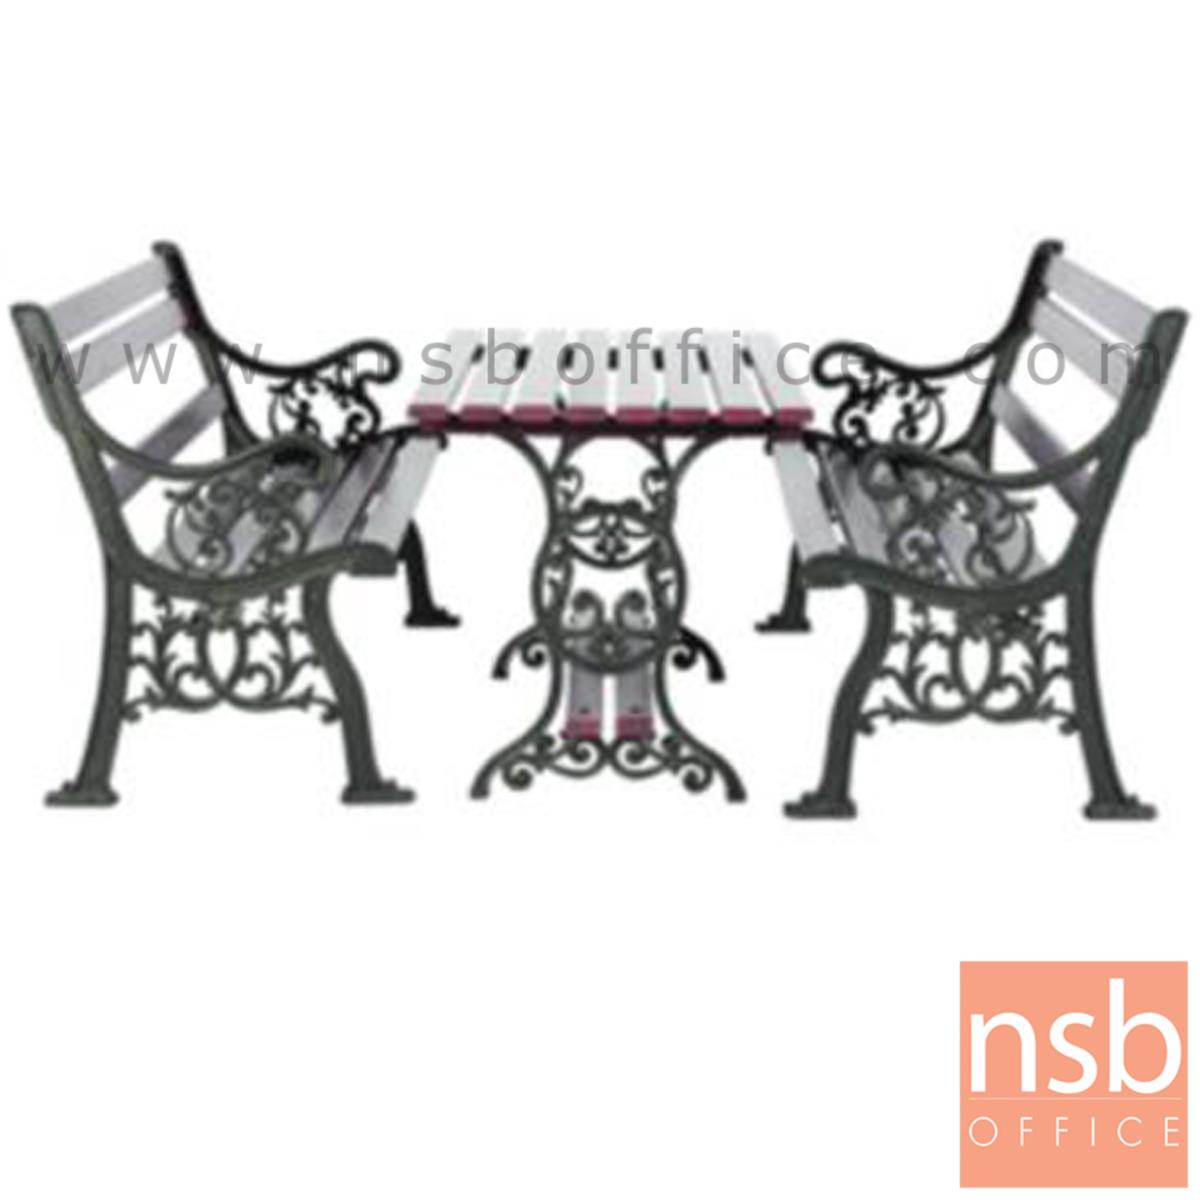 G08A043:ชุดโต๊ะสนาม พร้อมเก้าอี้ กทม. BKK-COT31 (โต๊ะ 1 + เก้าอี้ 2)   